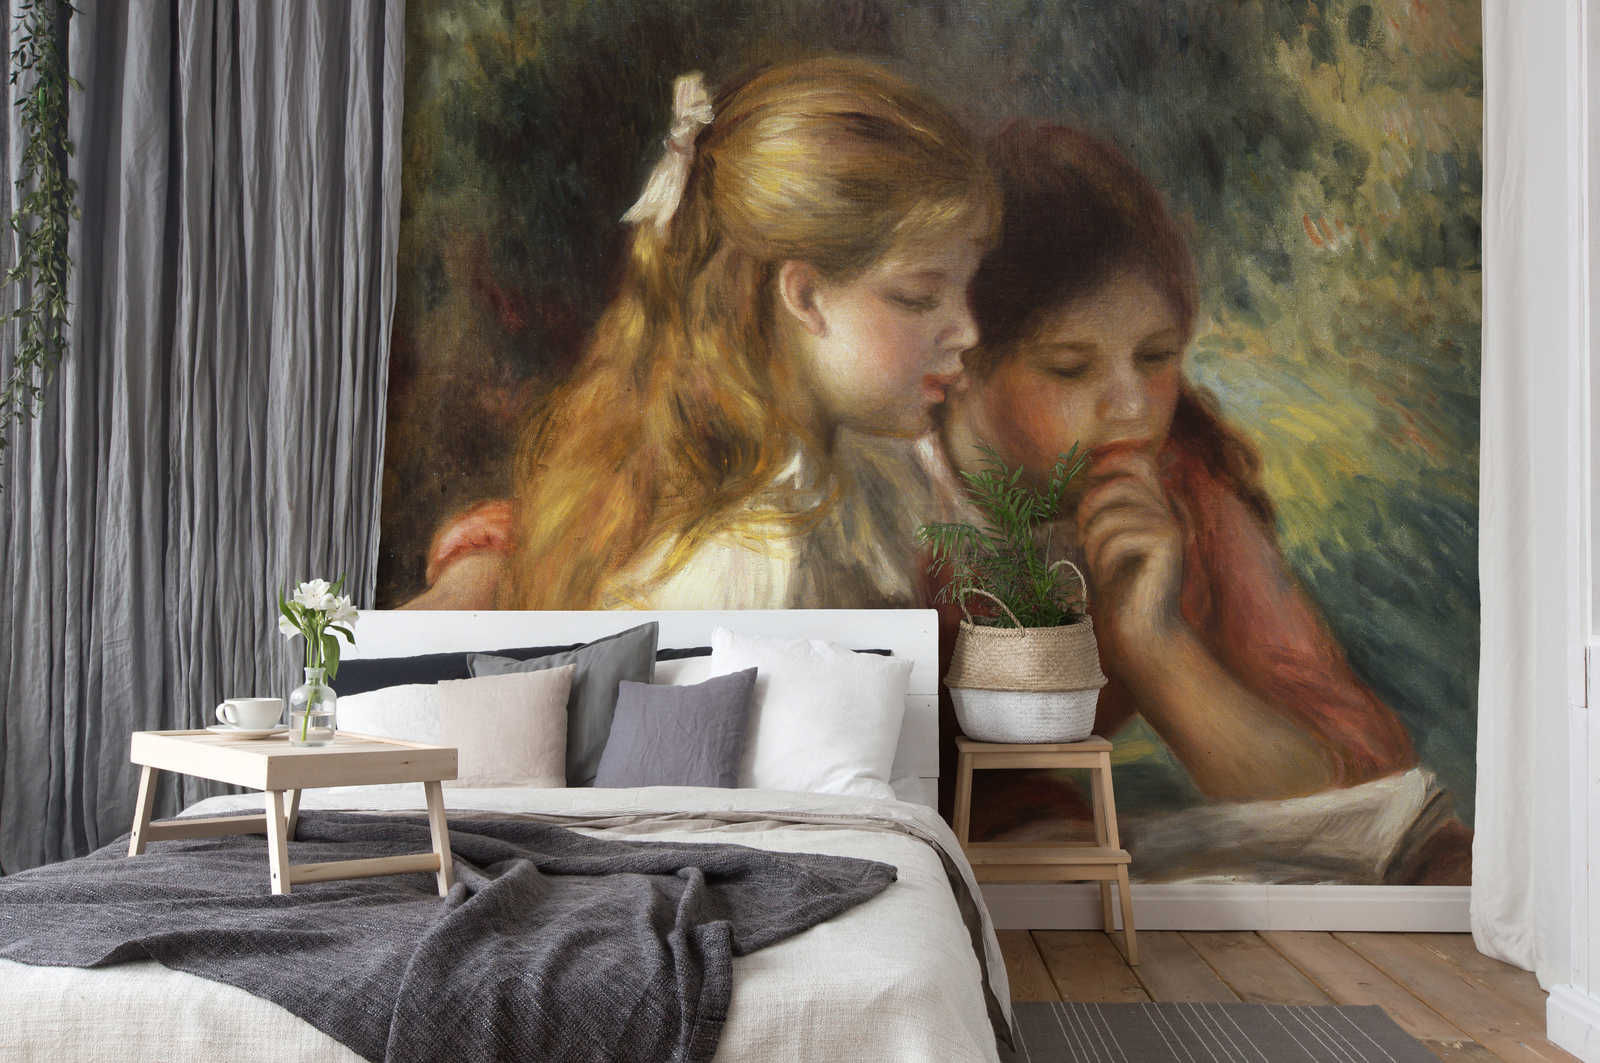             De Lezing" muurschildering van Pierre Auguste Renoir
        